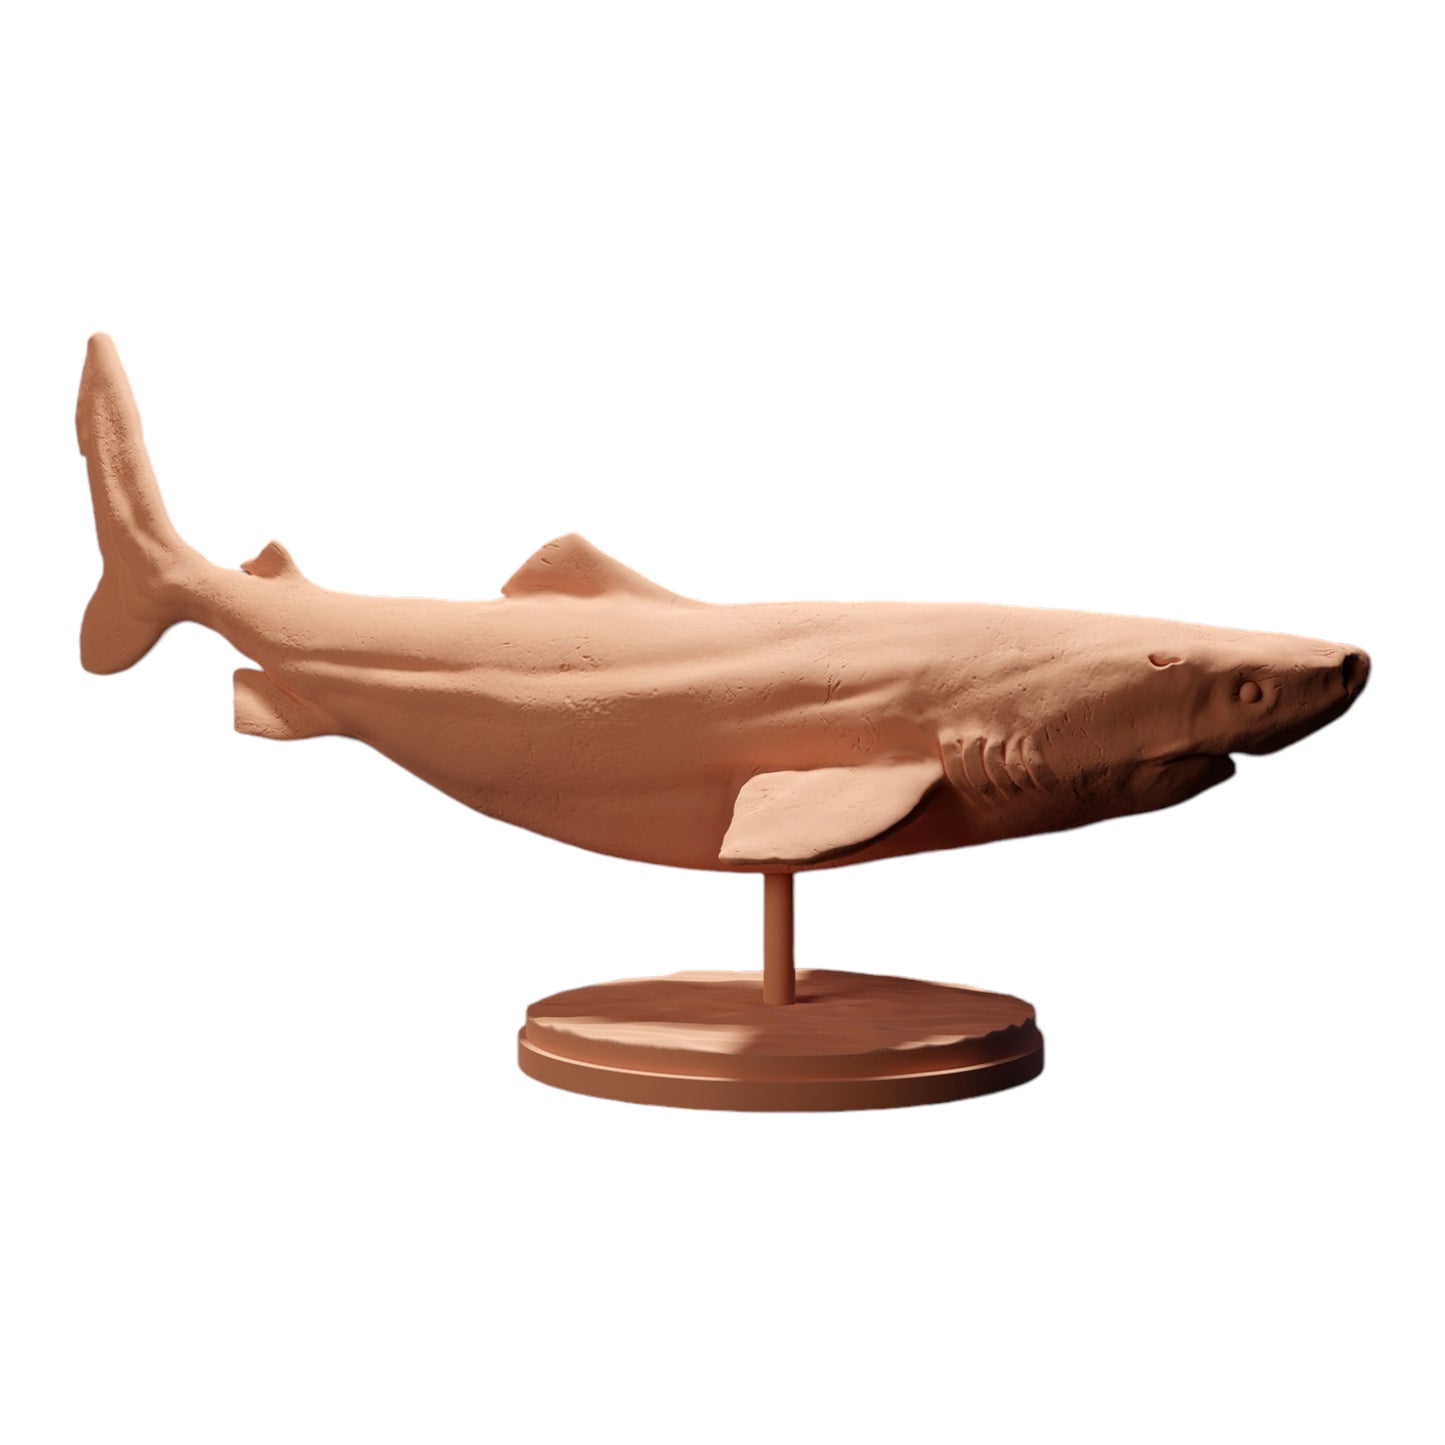 Produktfoto Diorama und Modellbau Miniatur Figur: Hai Tierfigur: Grönlandhai / Eishai